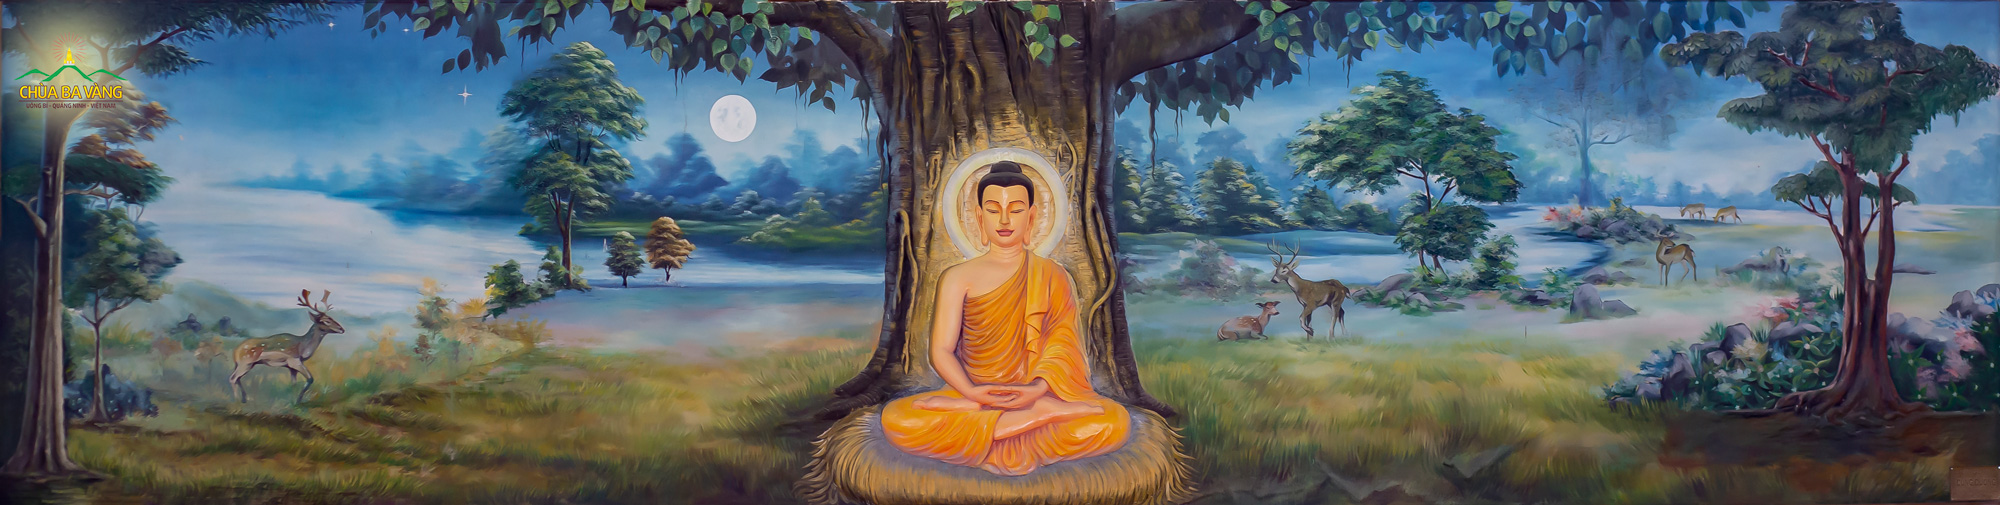 Đức Phật thành đạo, Ngài trở thành vị Phật Toàn giác thấu suốt rõ thế gian này